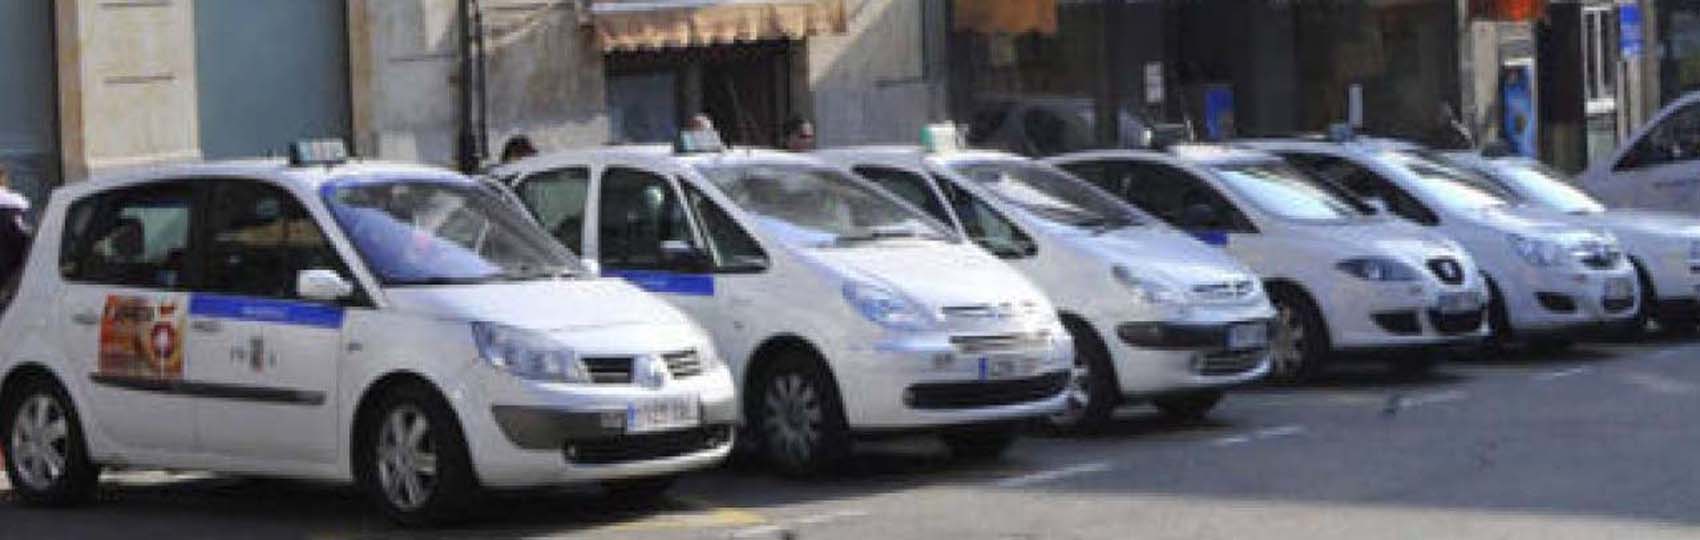 Noticias del sector del taxi y la movilidad en Salamanca.  Mantente informado de todas las noticias del taxi de Salamanca en el grupo de Facebook de Todo Taxi.